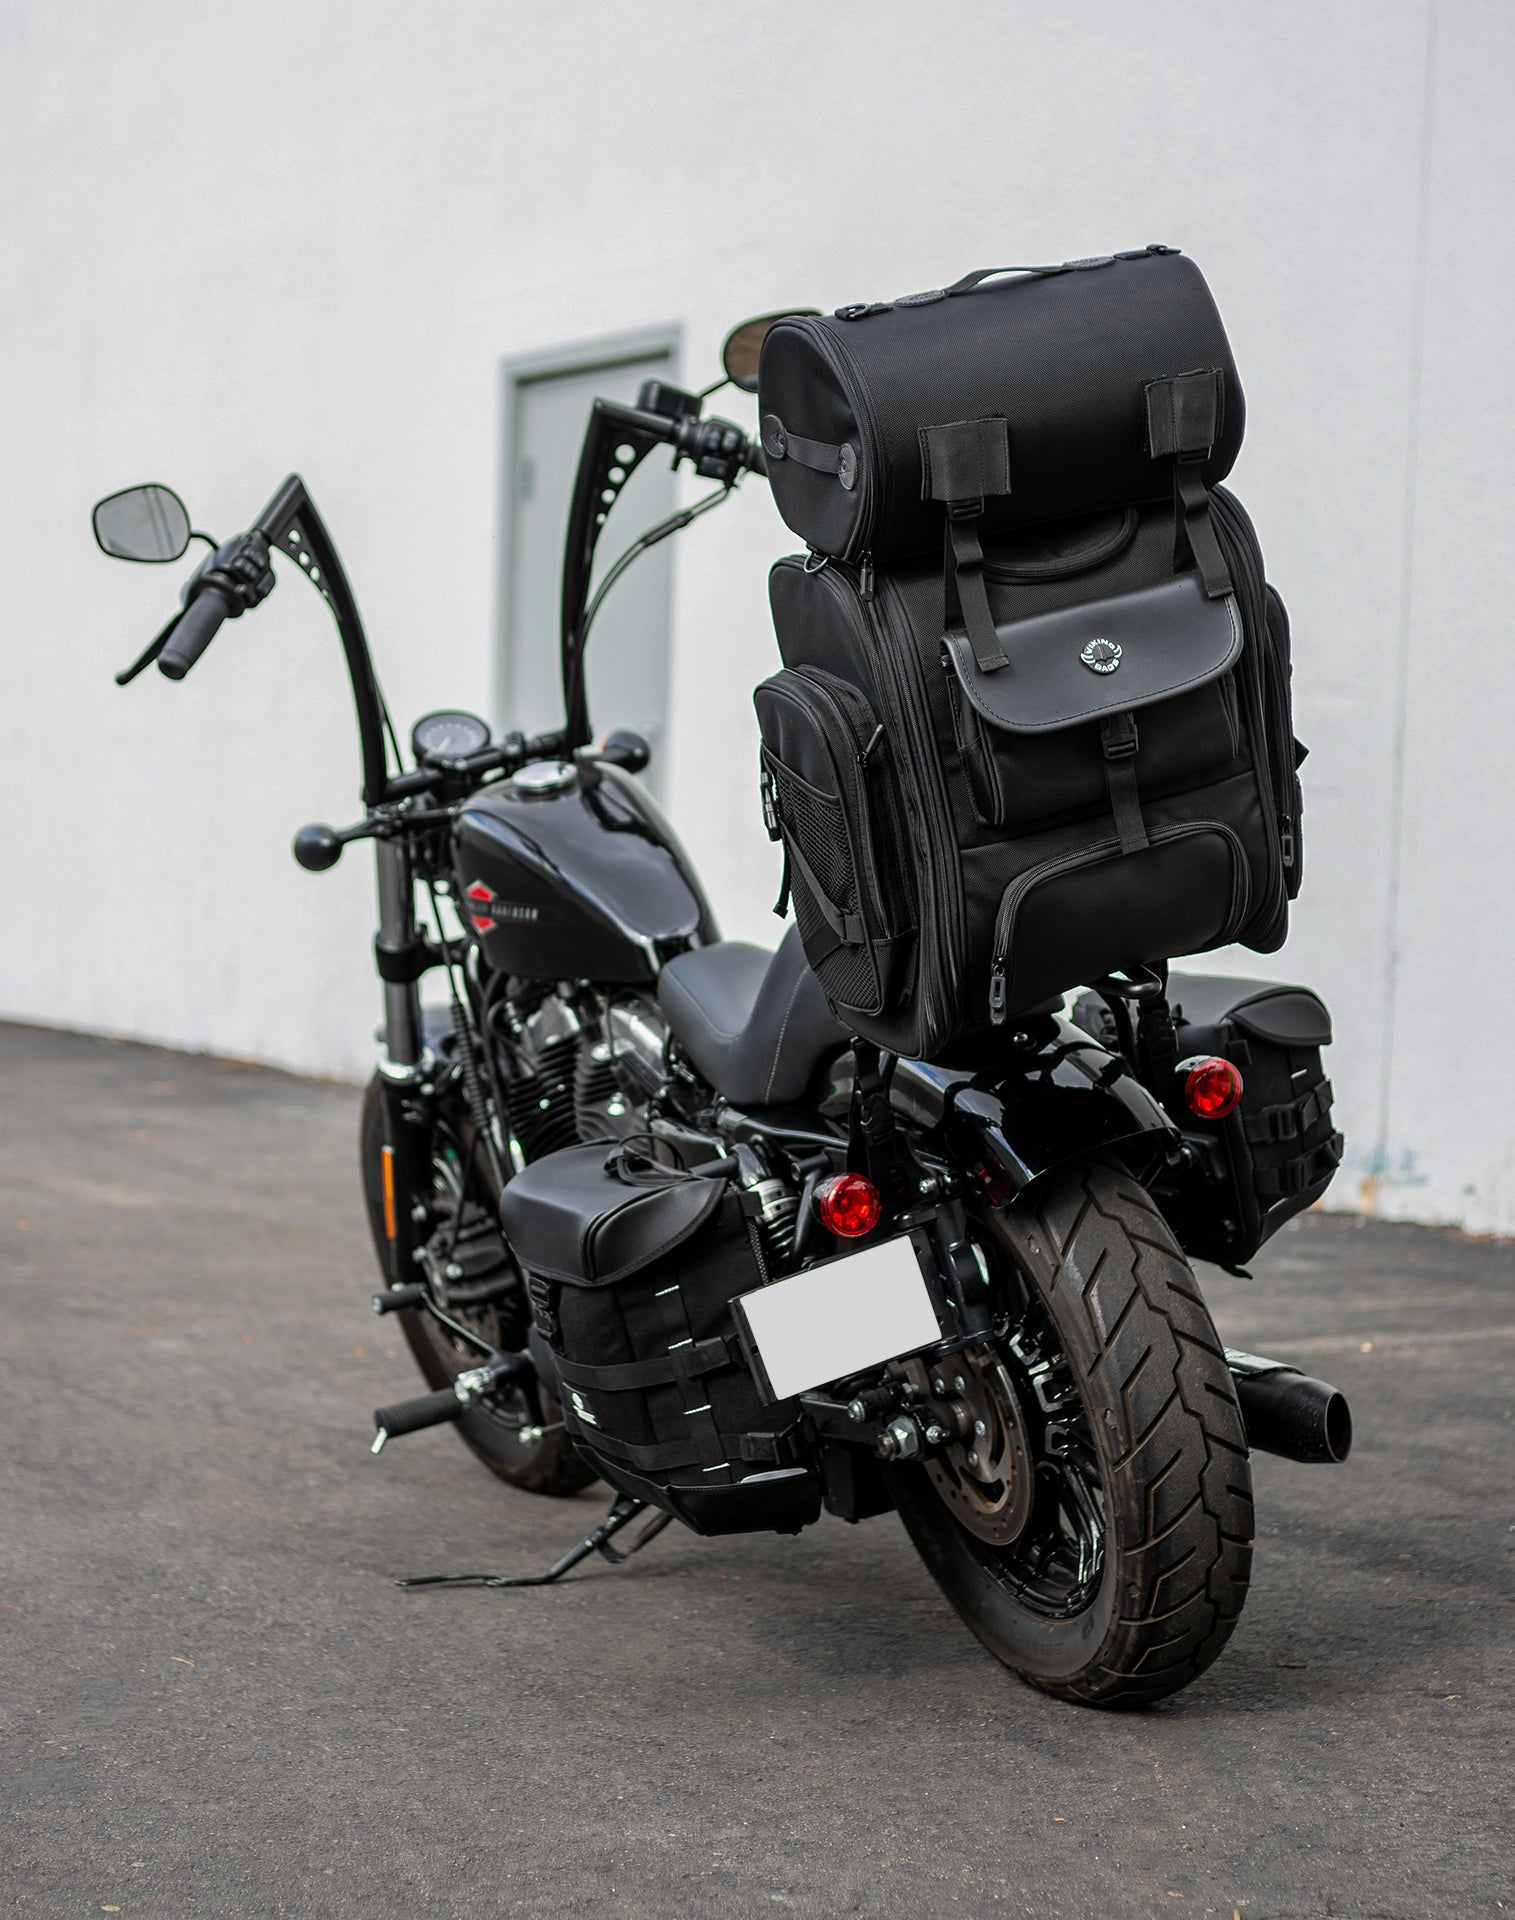 52L - Dwarf XL Motorcycle Tail Bag